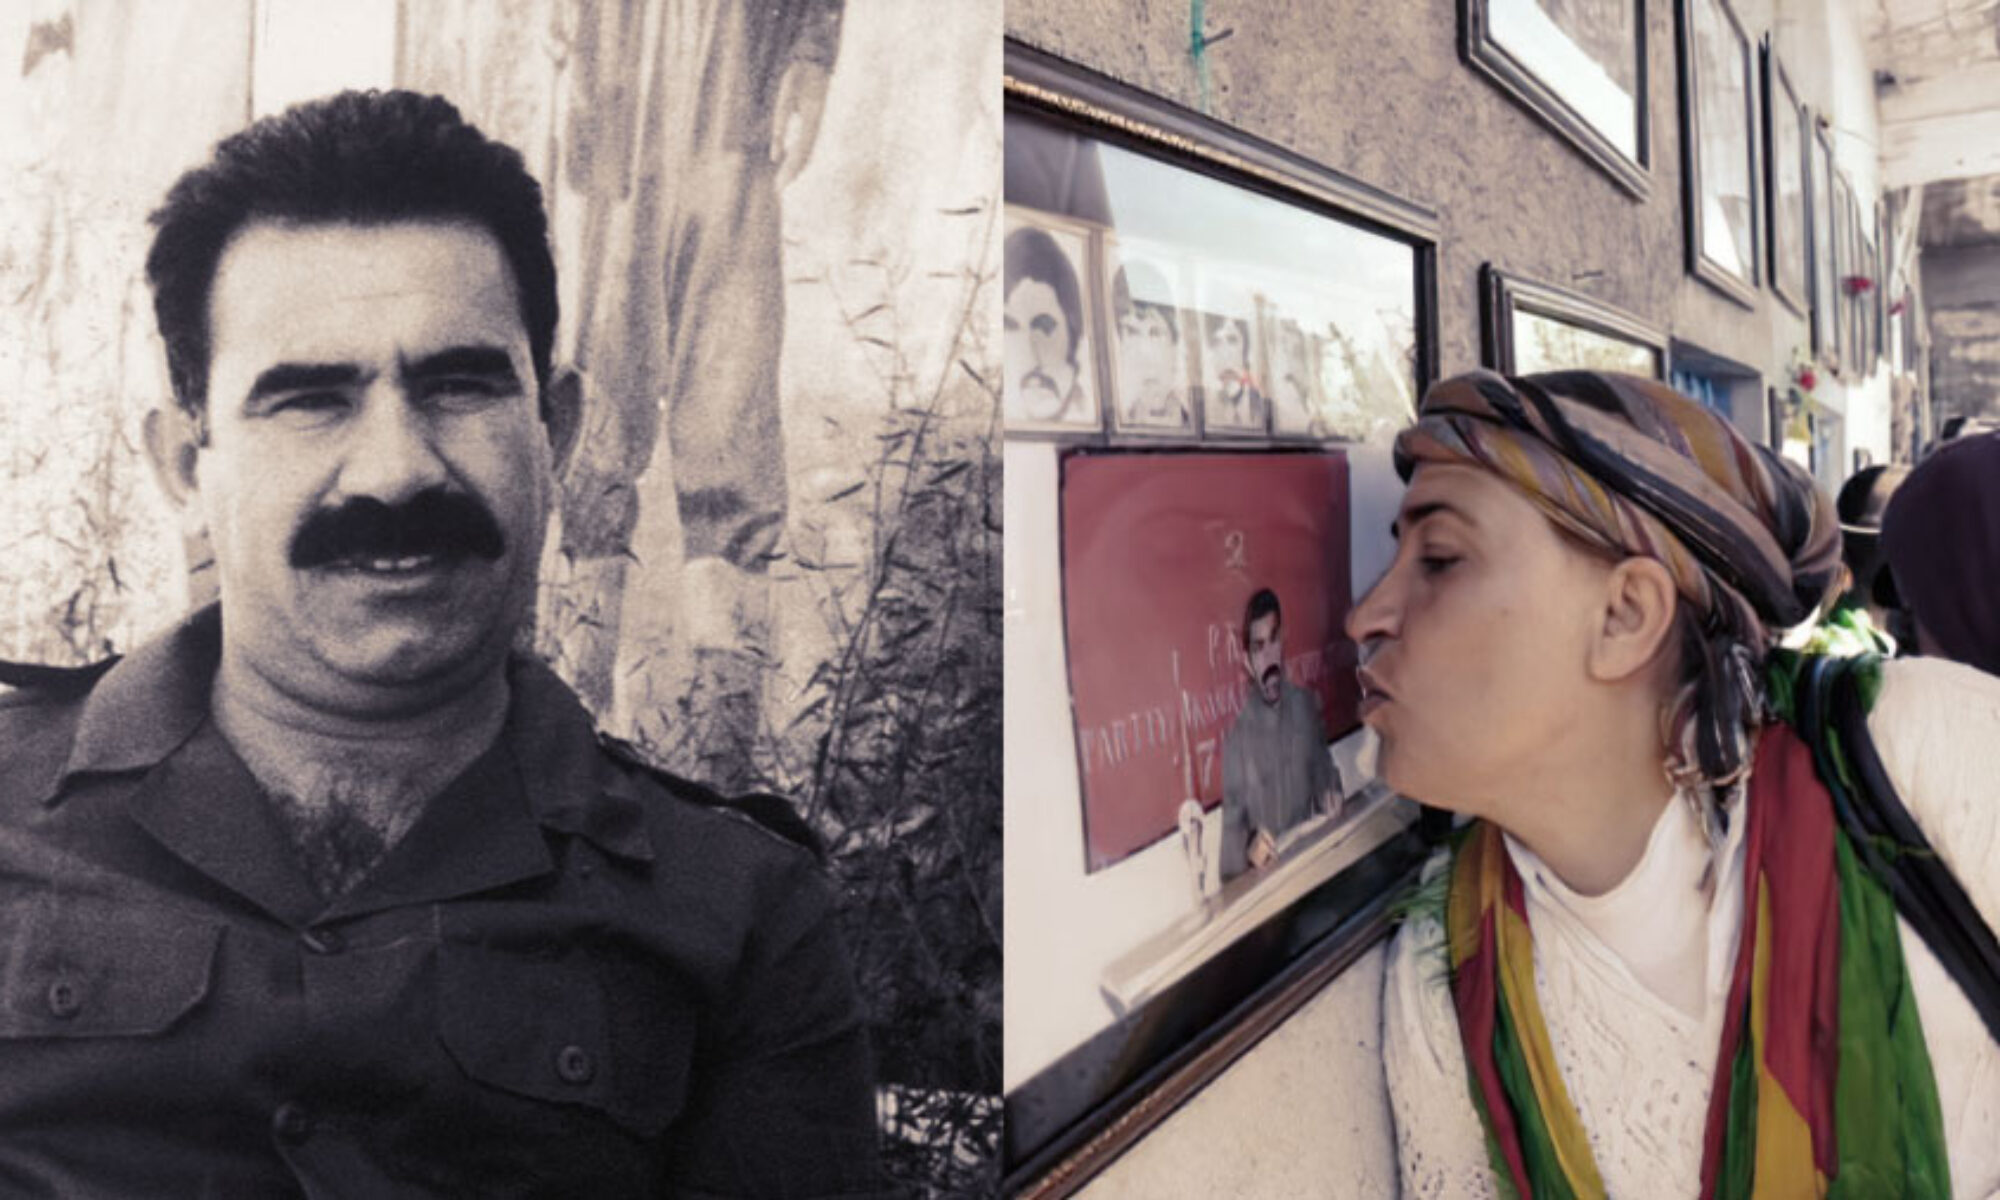 1.Bölüm: “Bijî Serok Apo” sloganın ardındaki Öcalan ve lider tapınmacılığı Çetin Göngör, Kemal Pir, Semir, APO Abdullah Öcalan